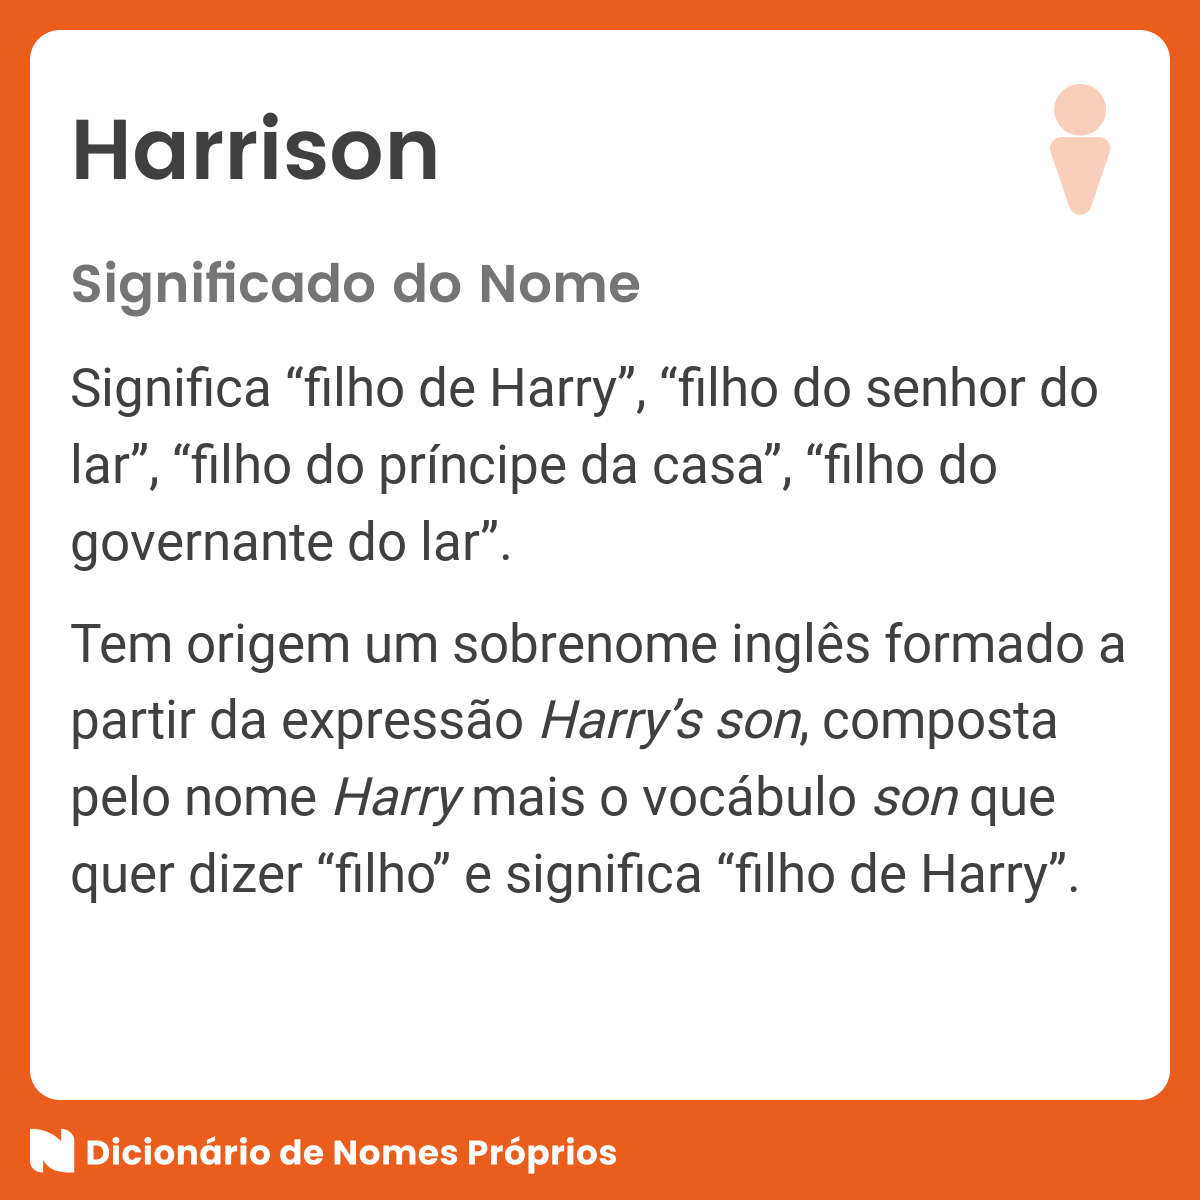 Significado do nome Harrison - Dicionário de Nomes Próprios